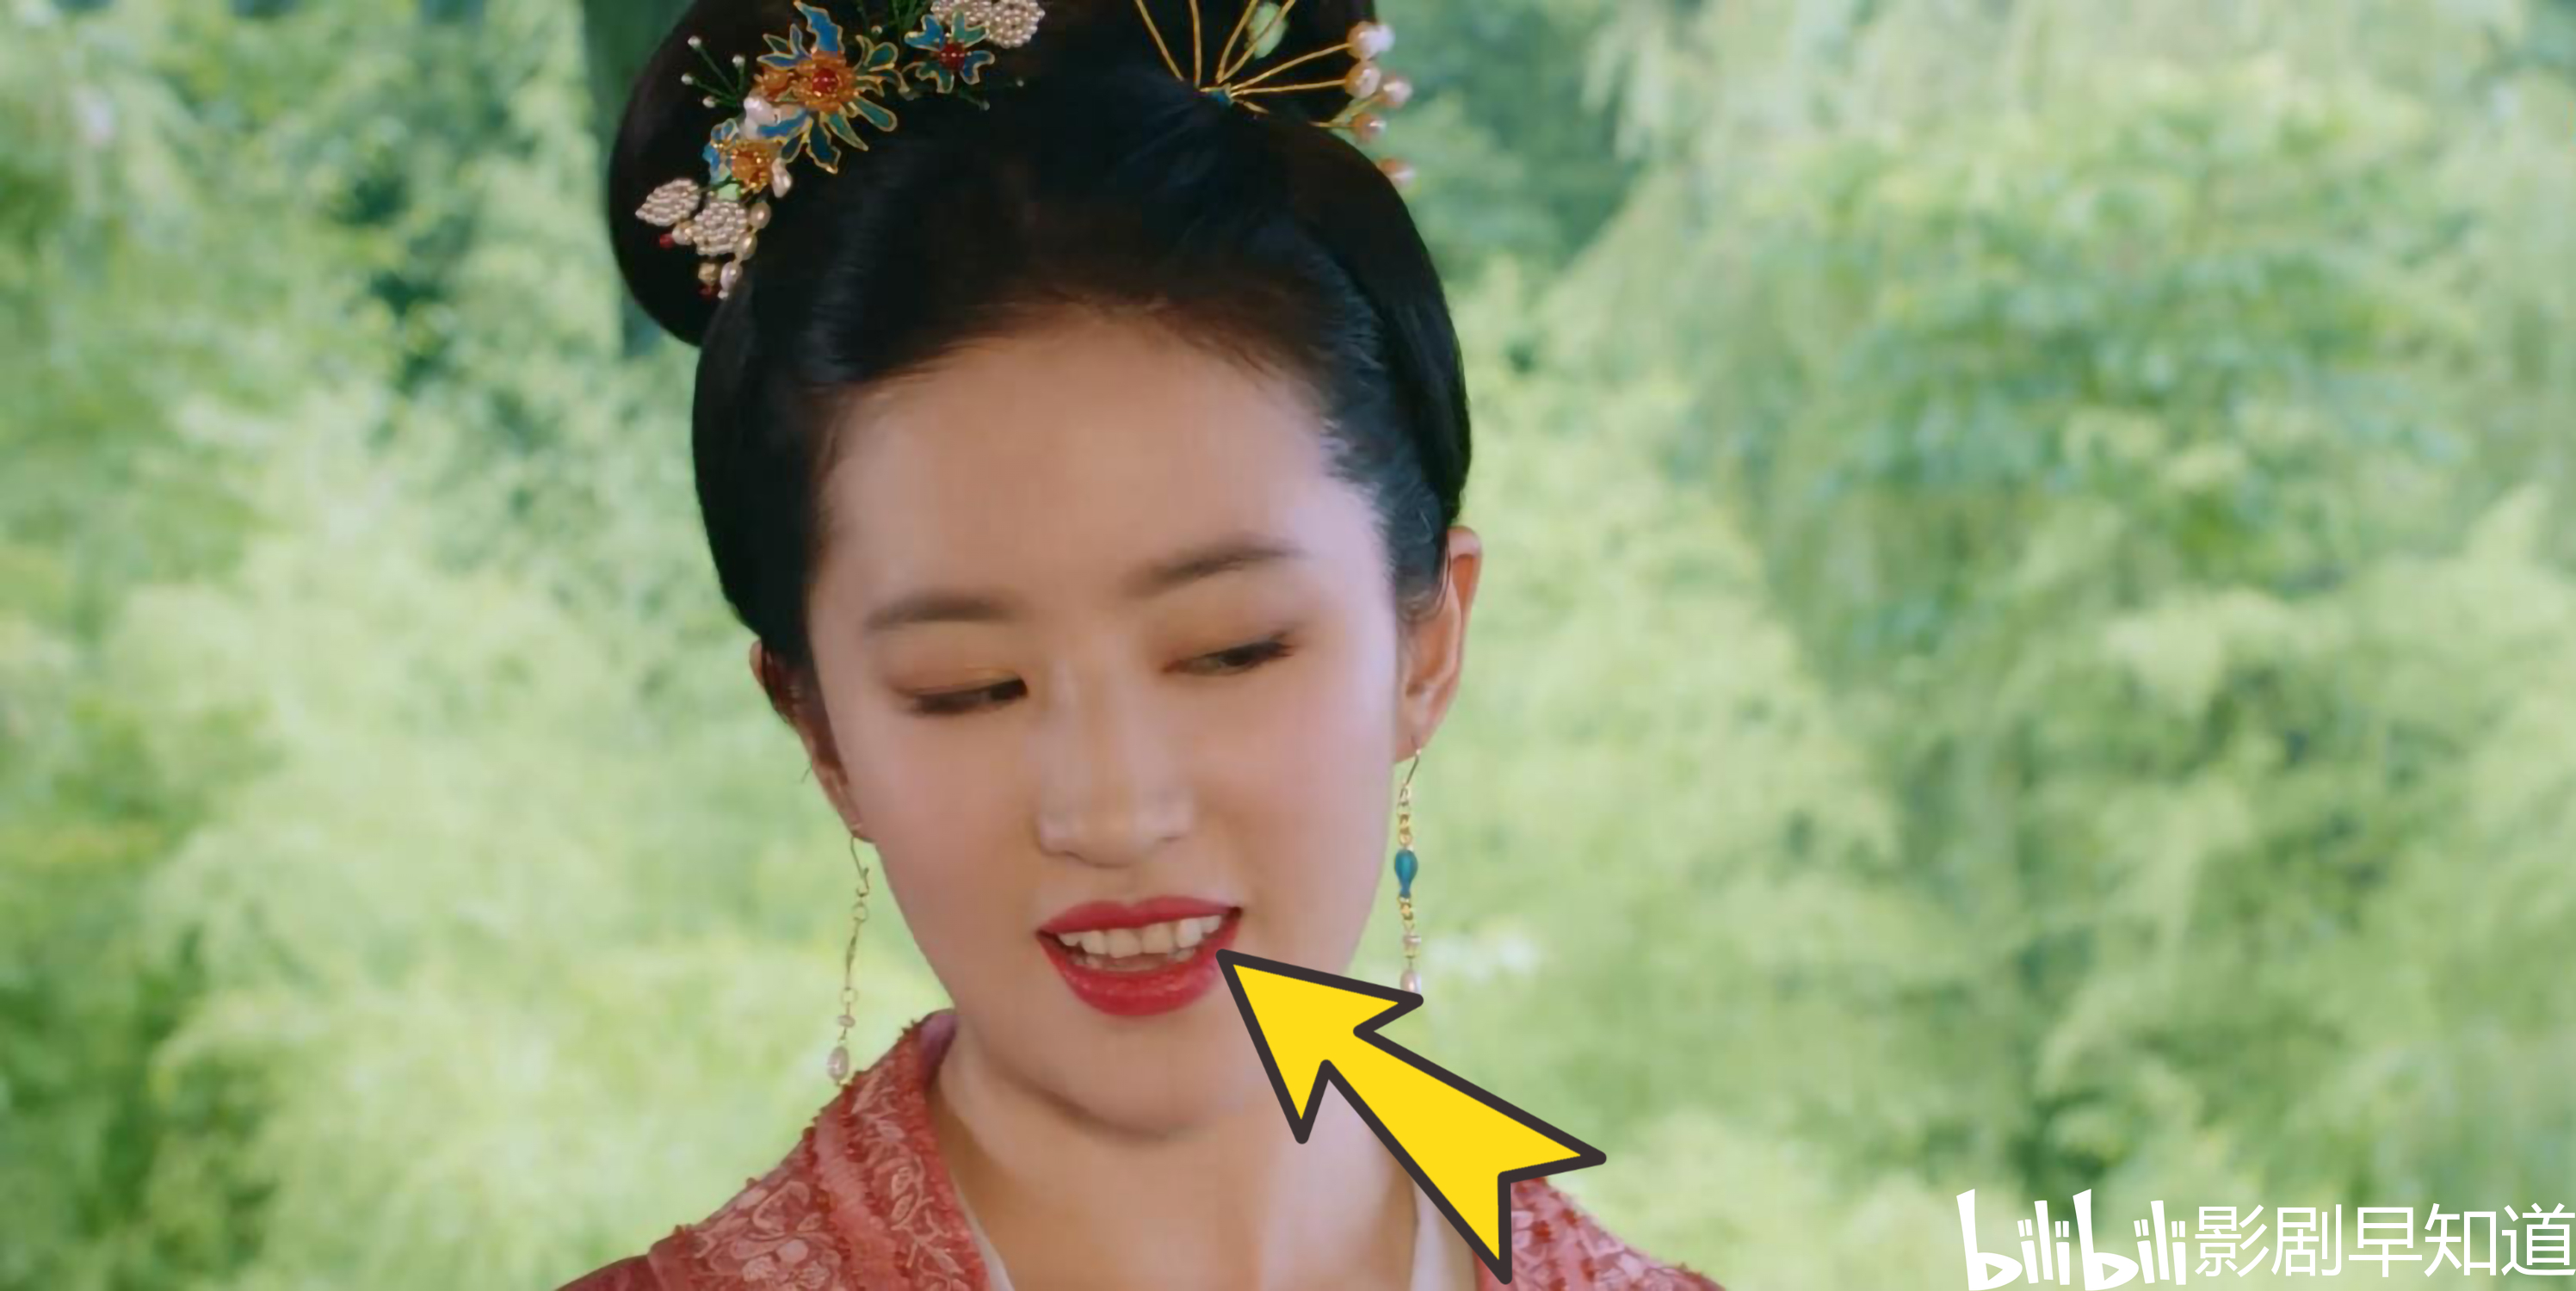 神仙姐姐刘亦菲的鼻尖上转折角很明显……